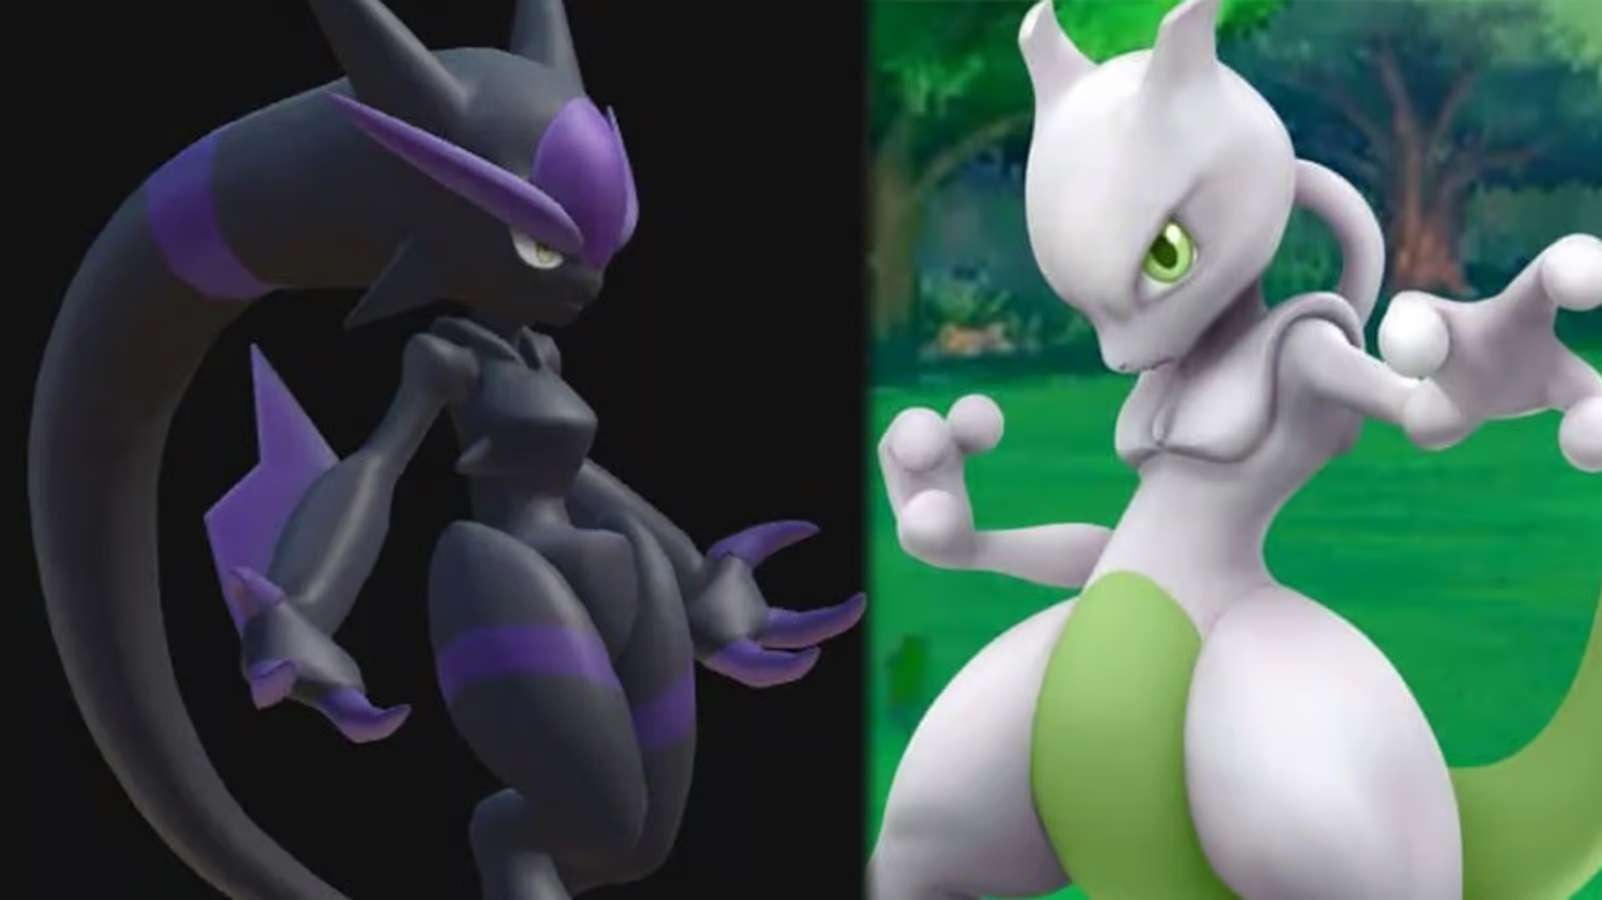 Comparaison d'un Pal de Palworld dataminé et de Mewtwo de Pokémon